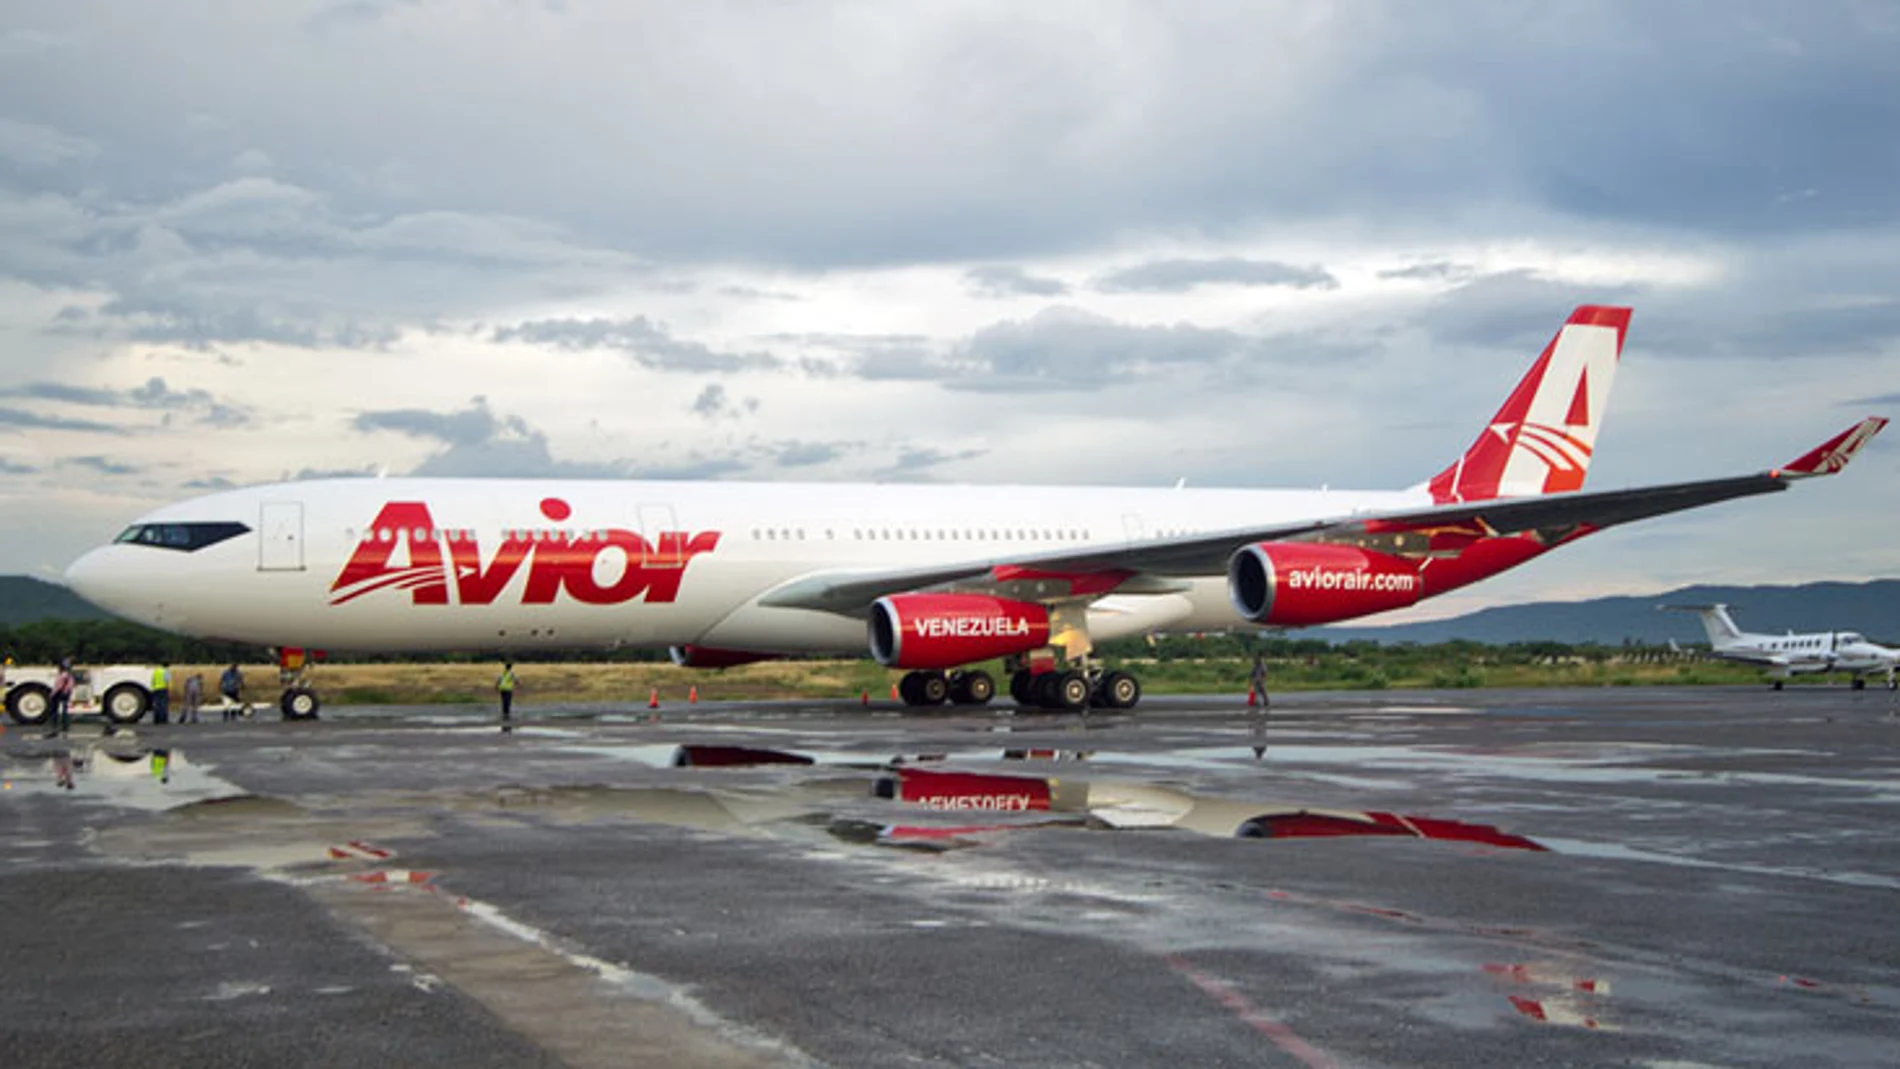 Avión de la compañía venezolana Avior Airlines